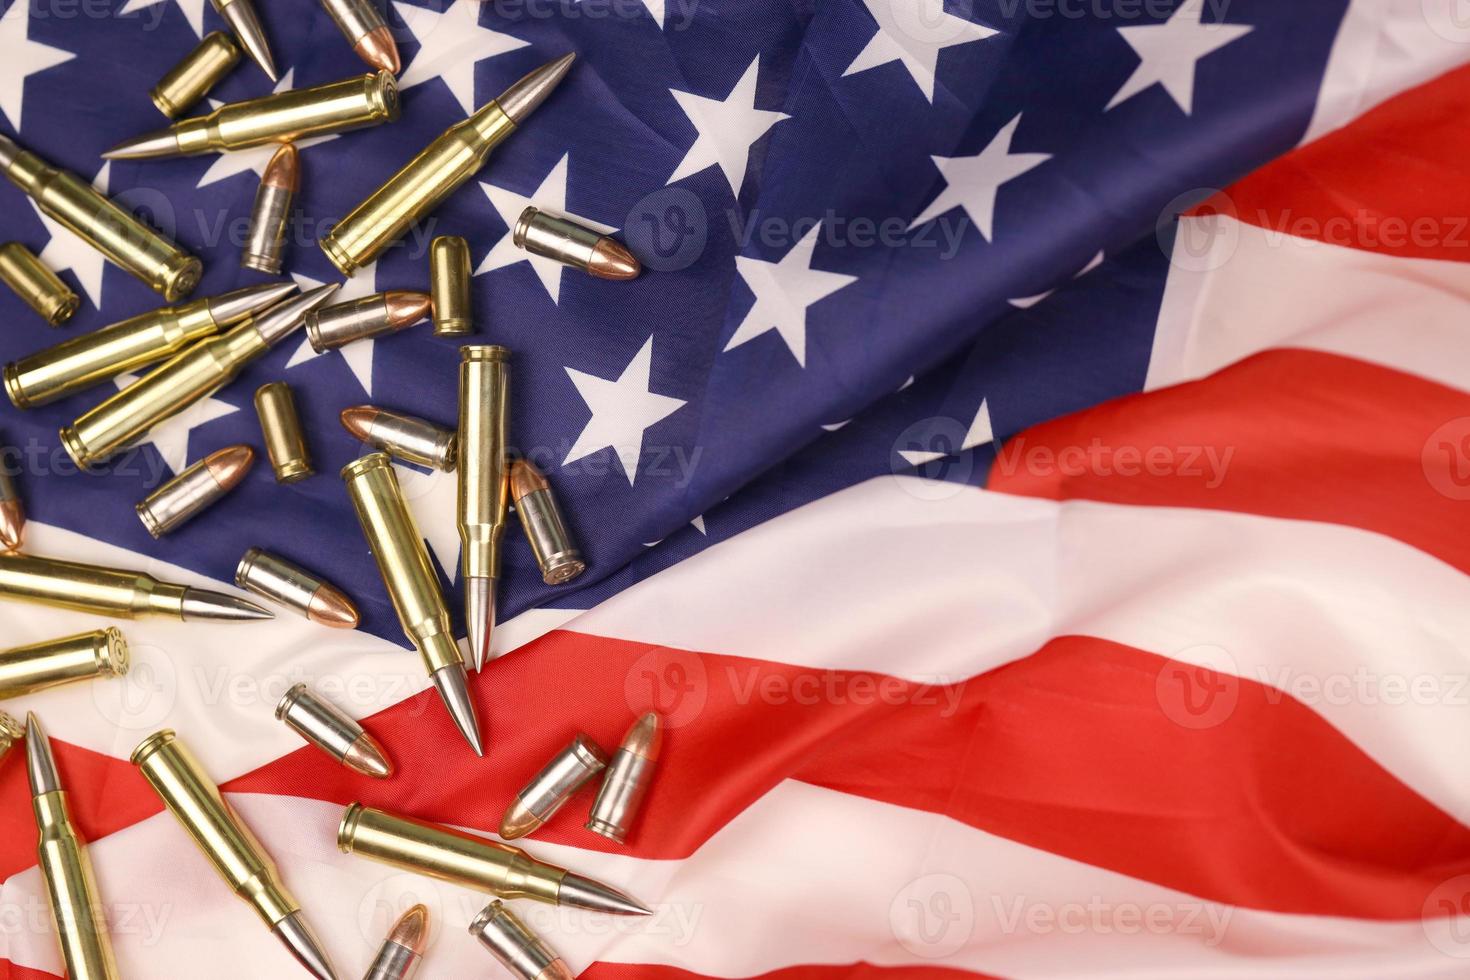 muitas balas e cartuchos amarelos de 9 mm e 5,56 mm na bandeira dos estados unidos. conceito de tráfico de armas no território dos eua ou operações especiais foto